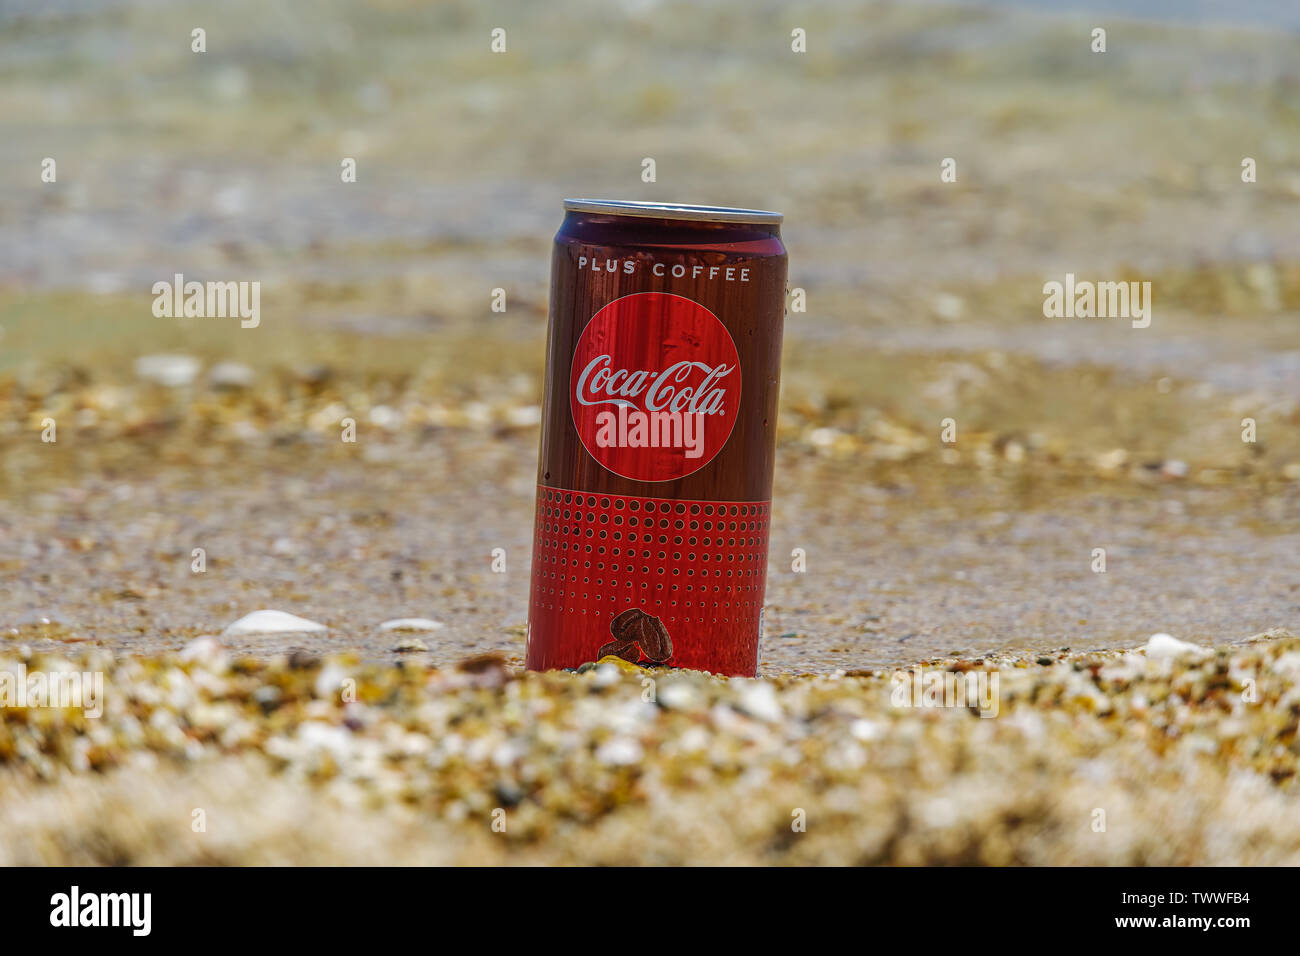 Plus Kaffee Cola Stockfotos und -bilder Kaufen - Alamy